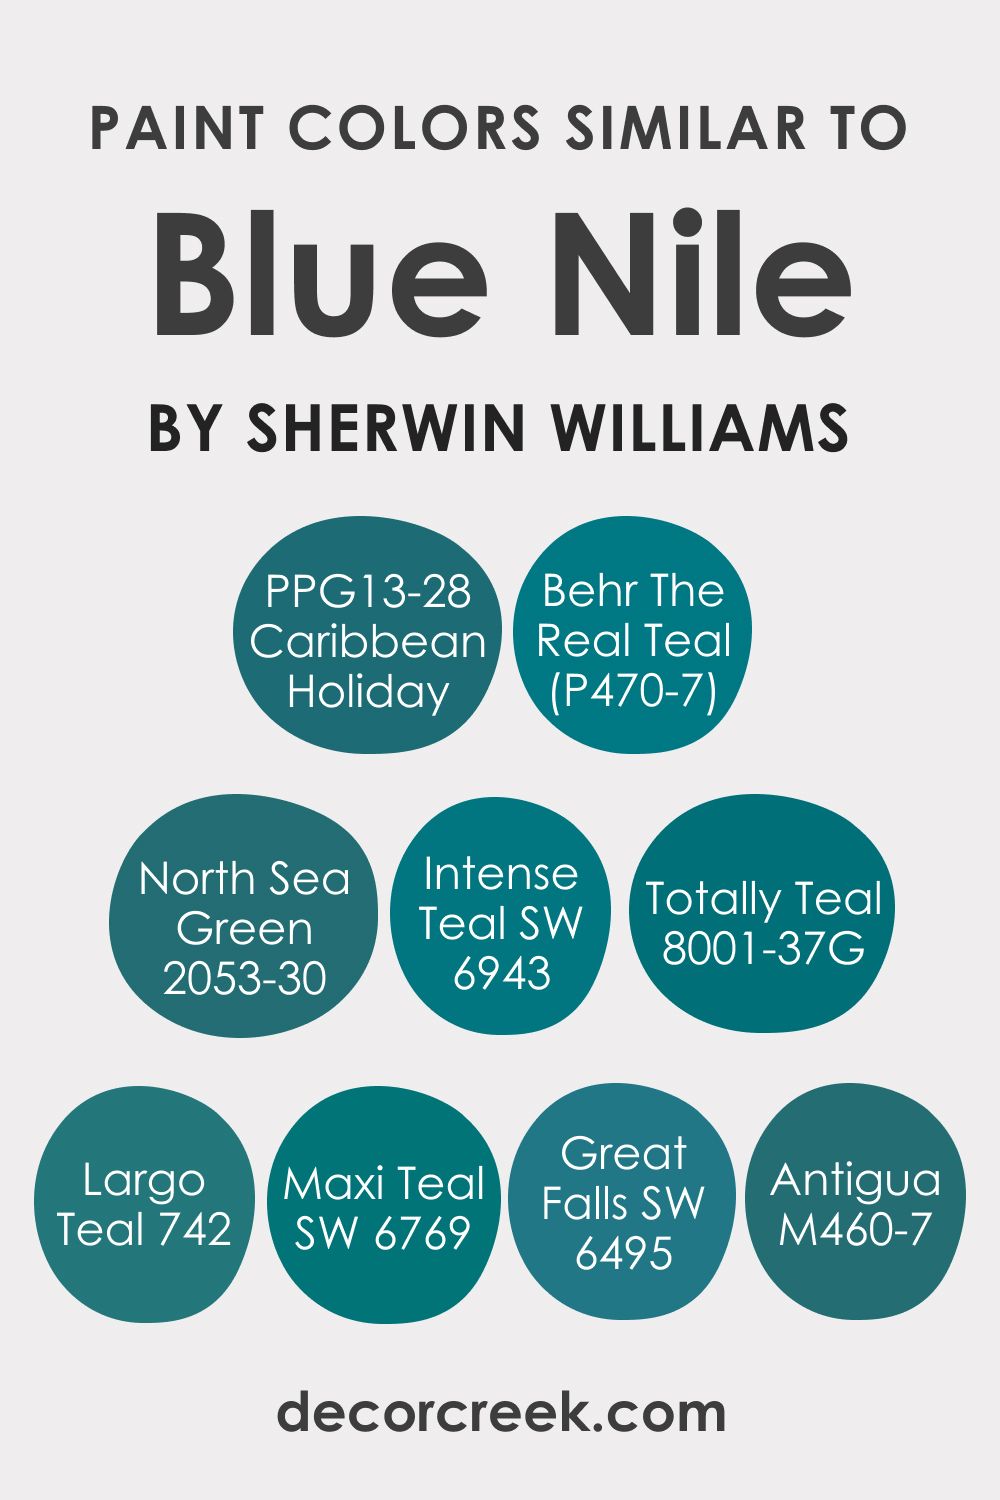 Blue Nile: The Perfect Blue Paint Color